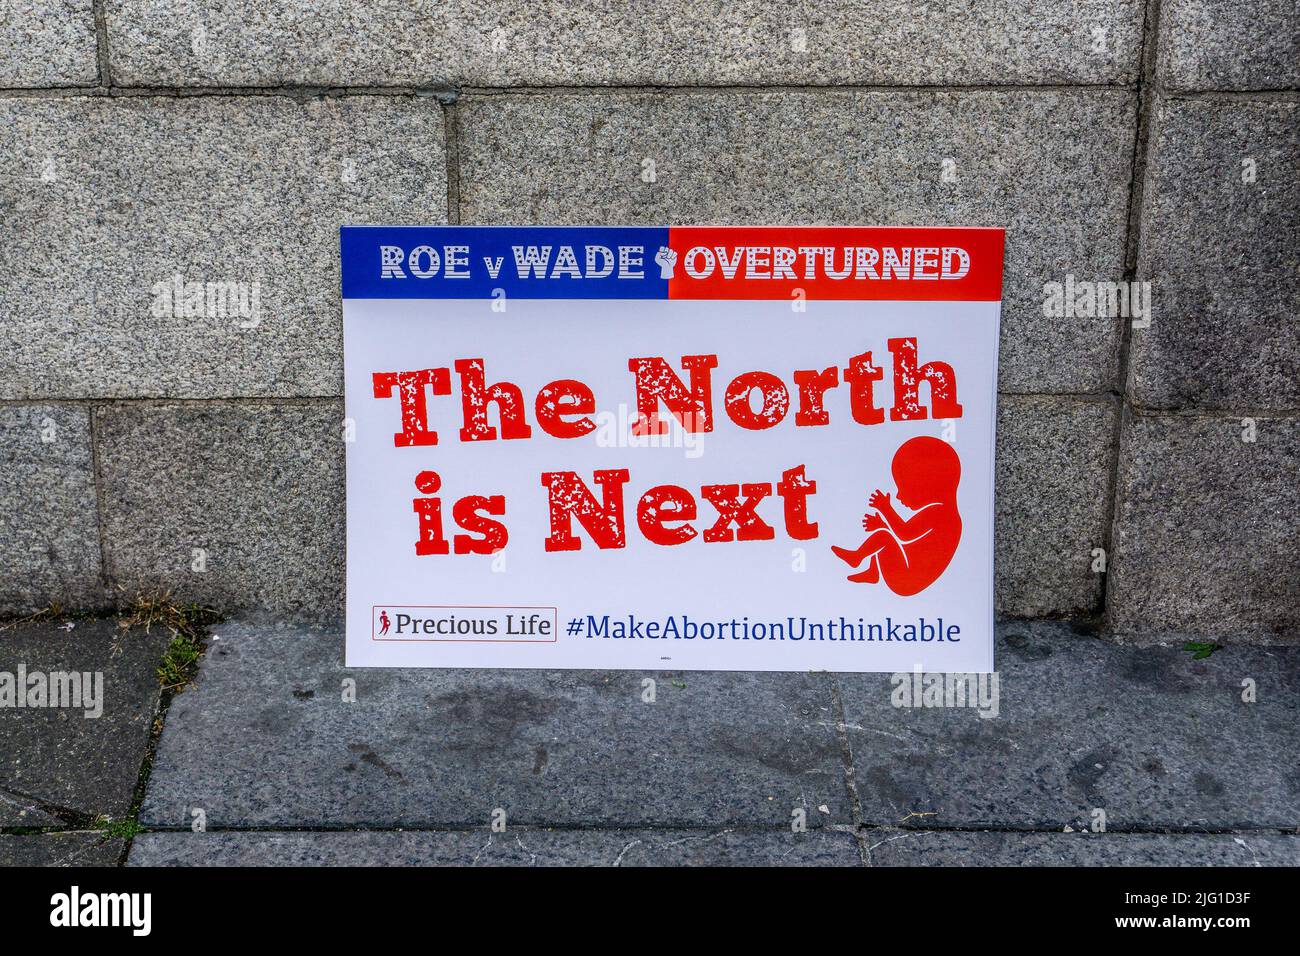 Une affiche lors d'un rassemblement Pro Life à Parnell Square, Dublin, Irlande. L'affiche fait référence à Roe v Wade et à la campagne pro LIFE en Irlande du Nord. Banque D'Images